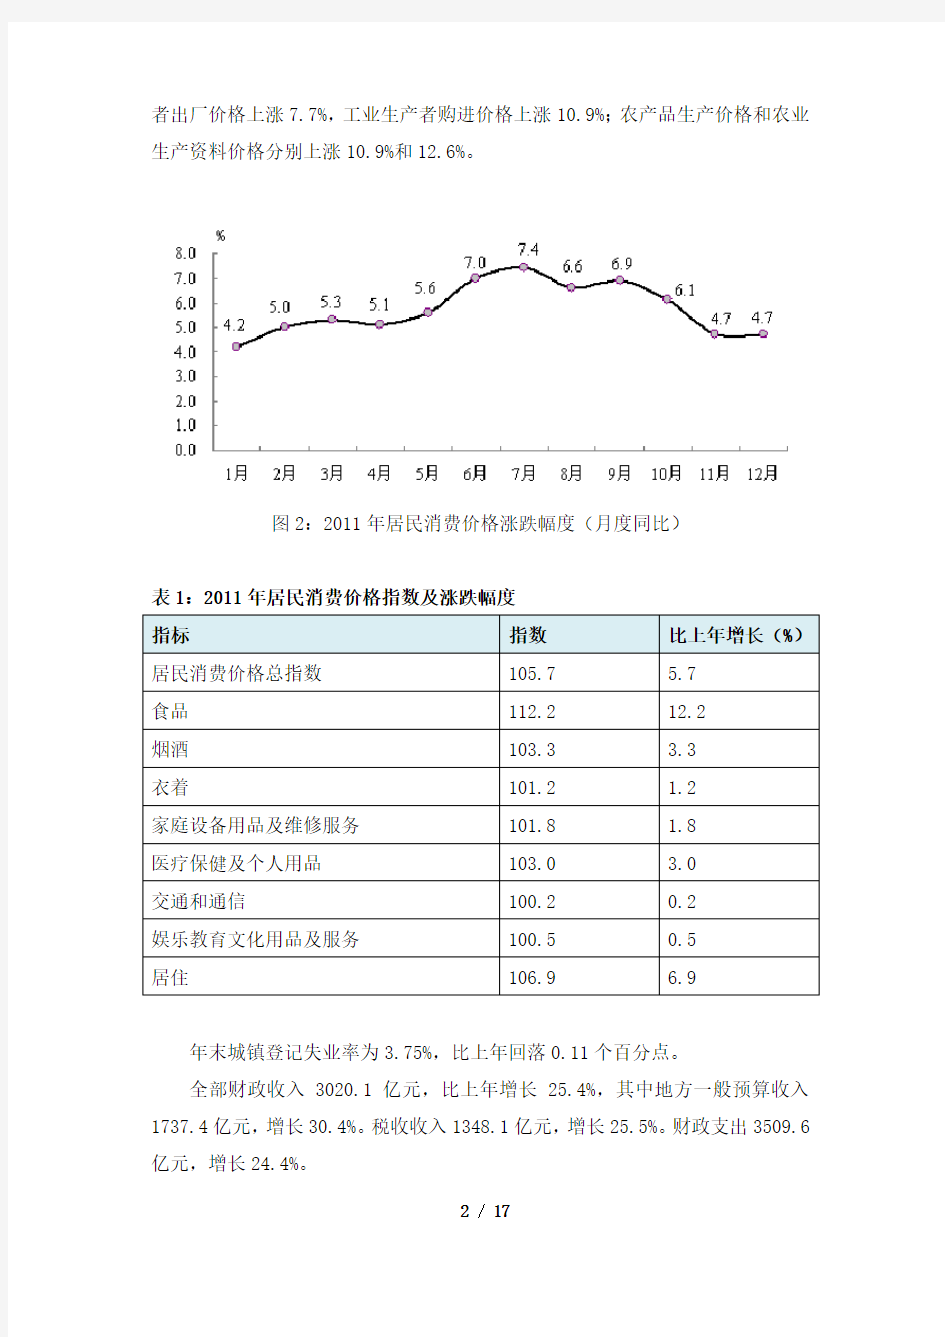 河北省2011年国民经济和社会发展统计公报